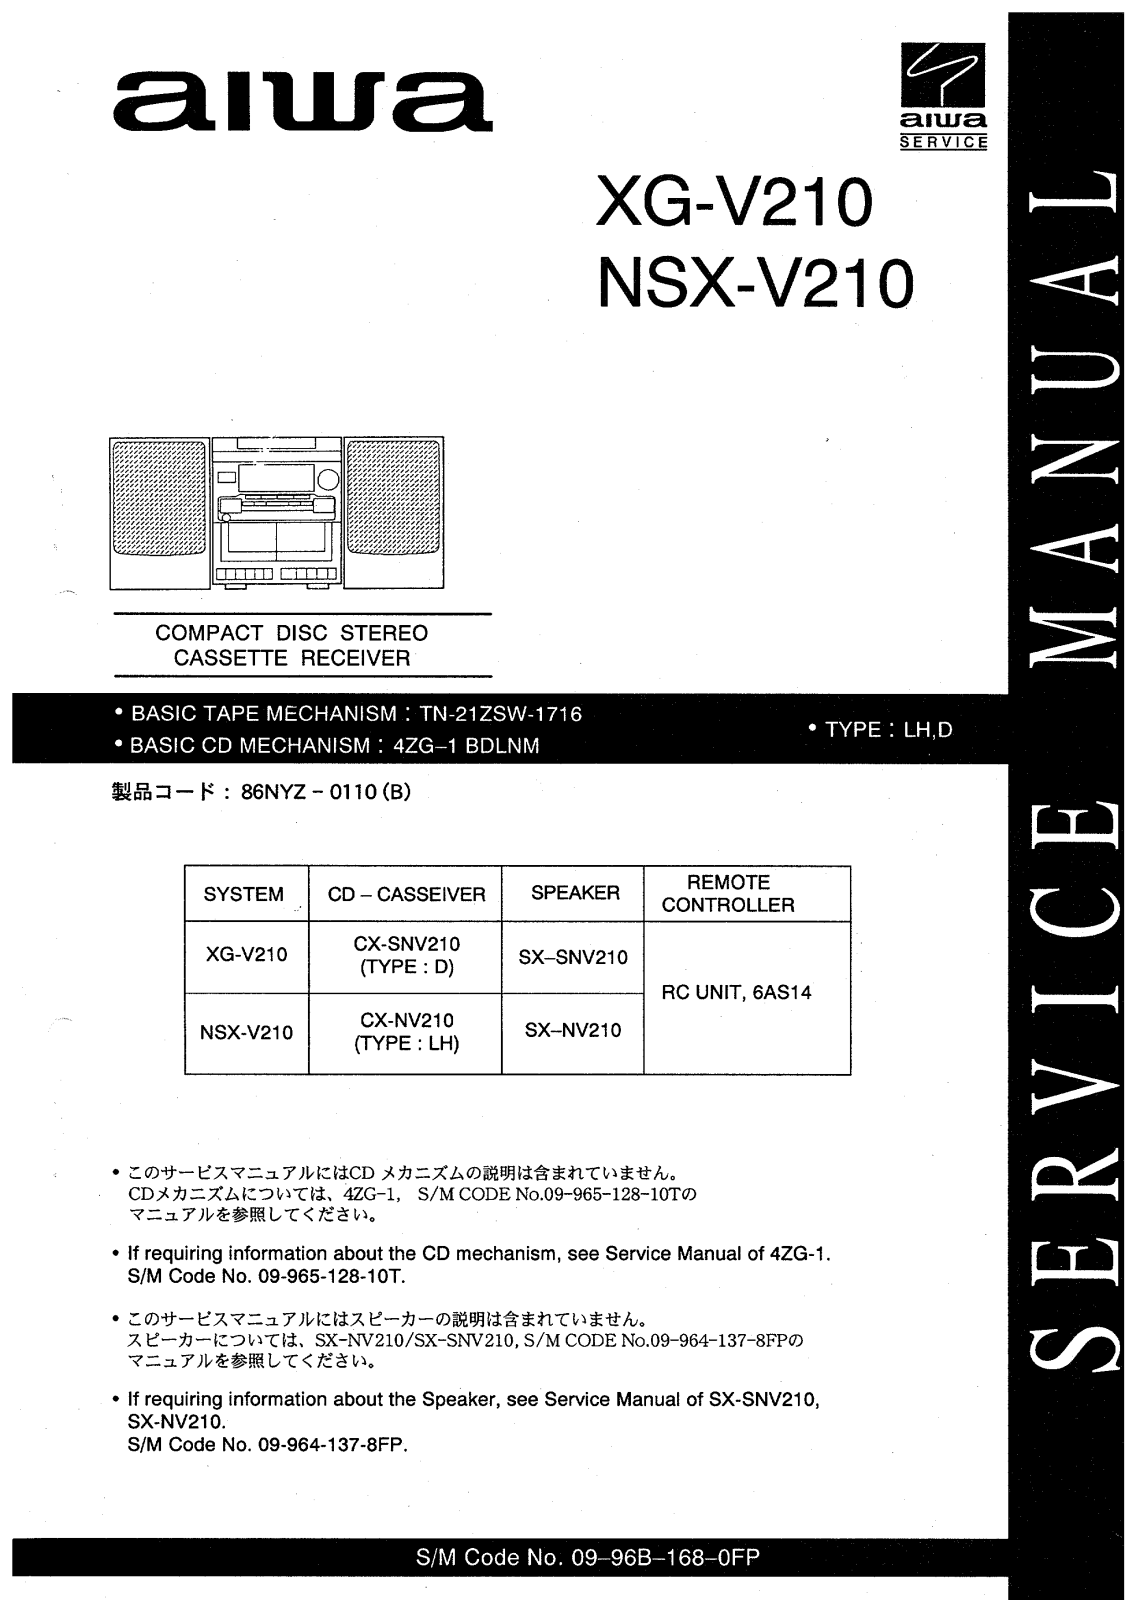 Aiwa XG-V210, NSX-V210 Service Manual